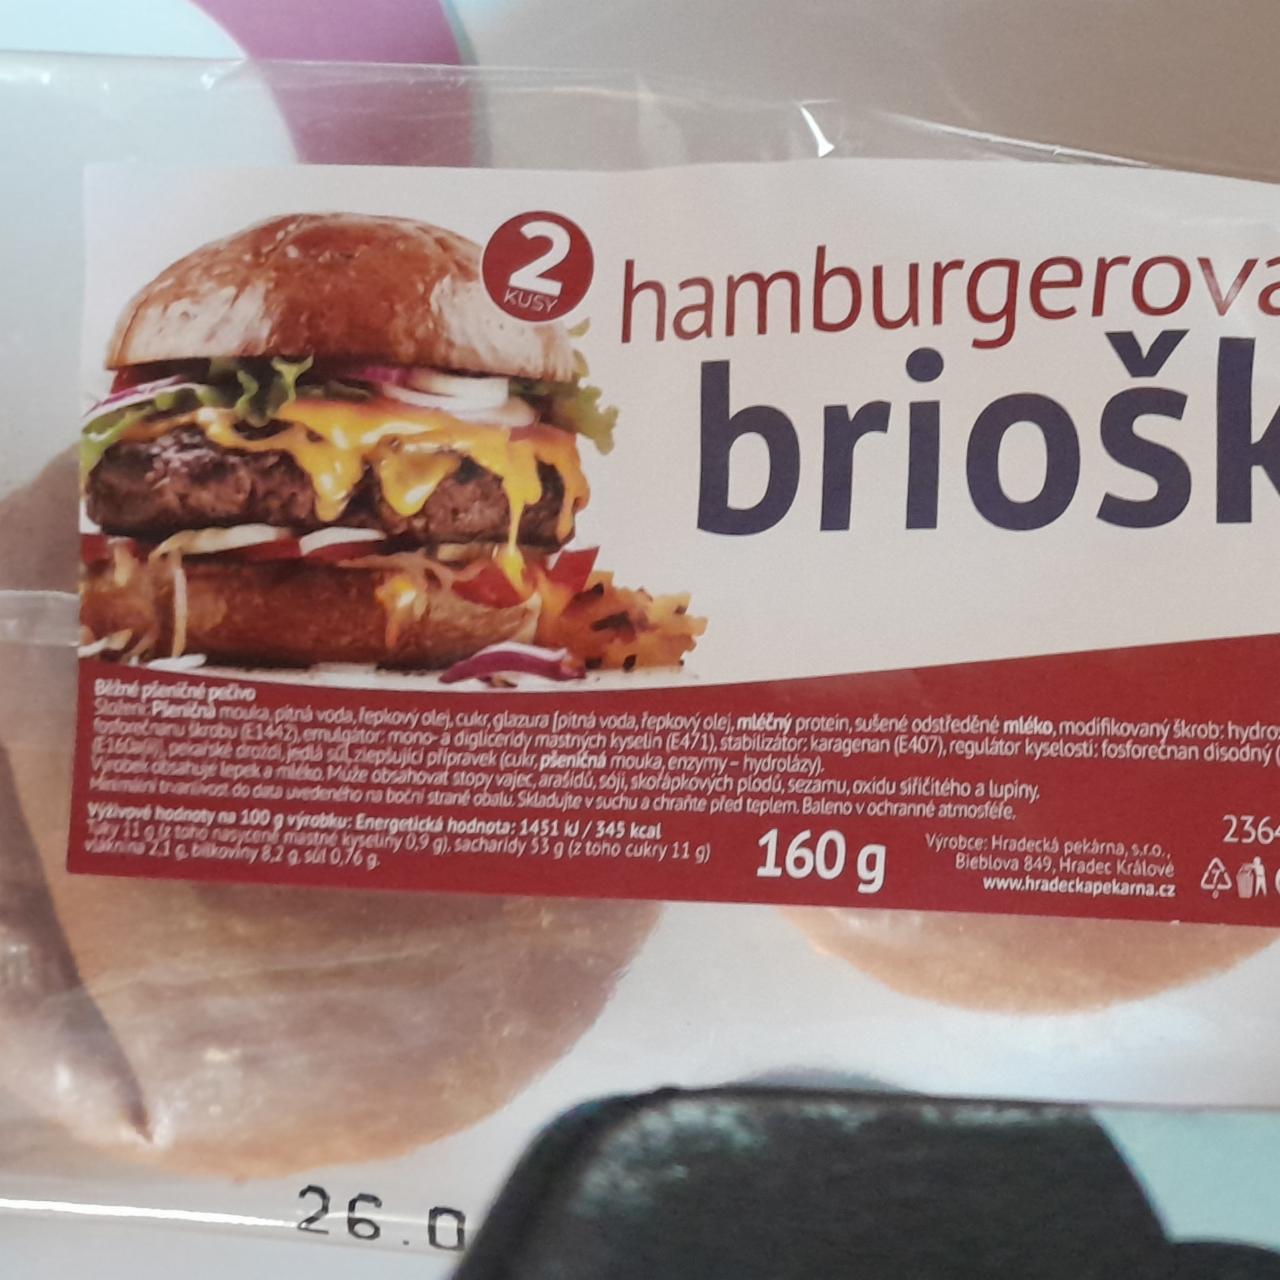 Fotografie - Hamburgerová brioška Hradecká pekárna